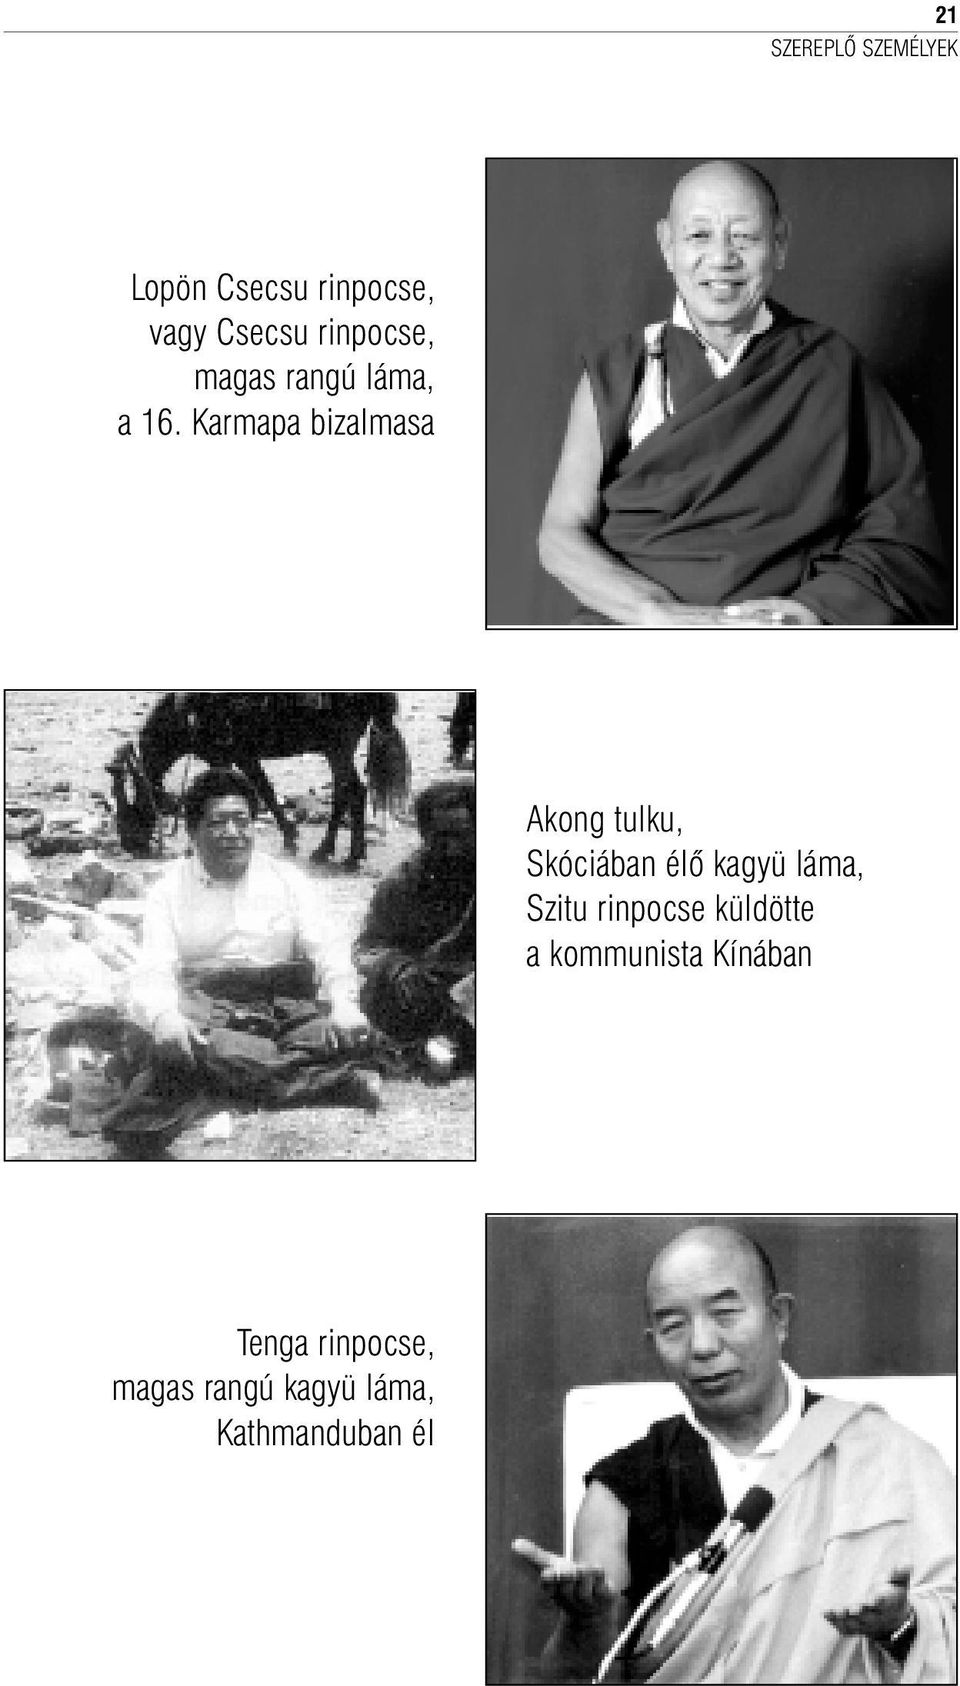 Karmapa bizalmasa Akong tulku, Skóciában élõ kagyü láma,